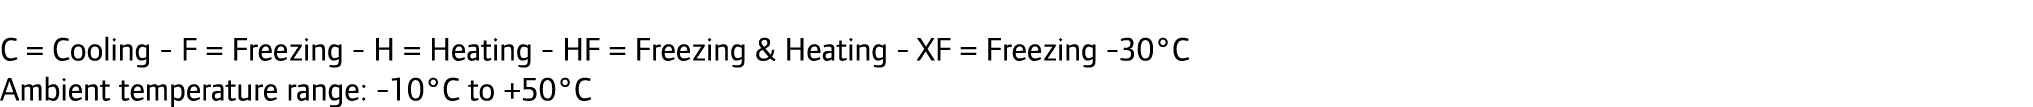 C = Cooling - F = Freezing - H = Heating - HF = Freezing & Heating - XF = Freezing -30°C Ambient temperature range: -...